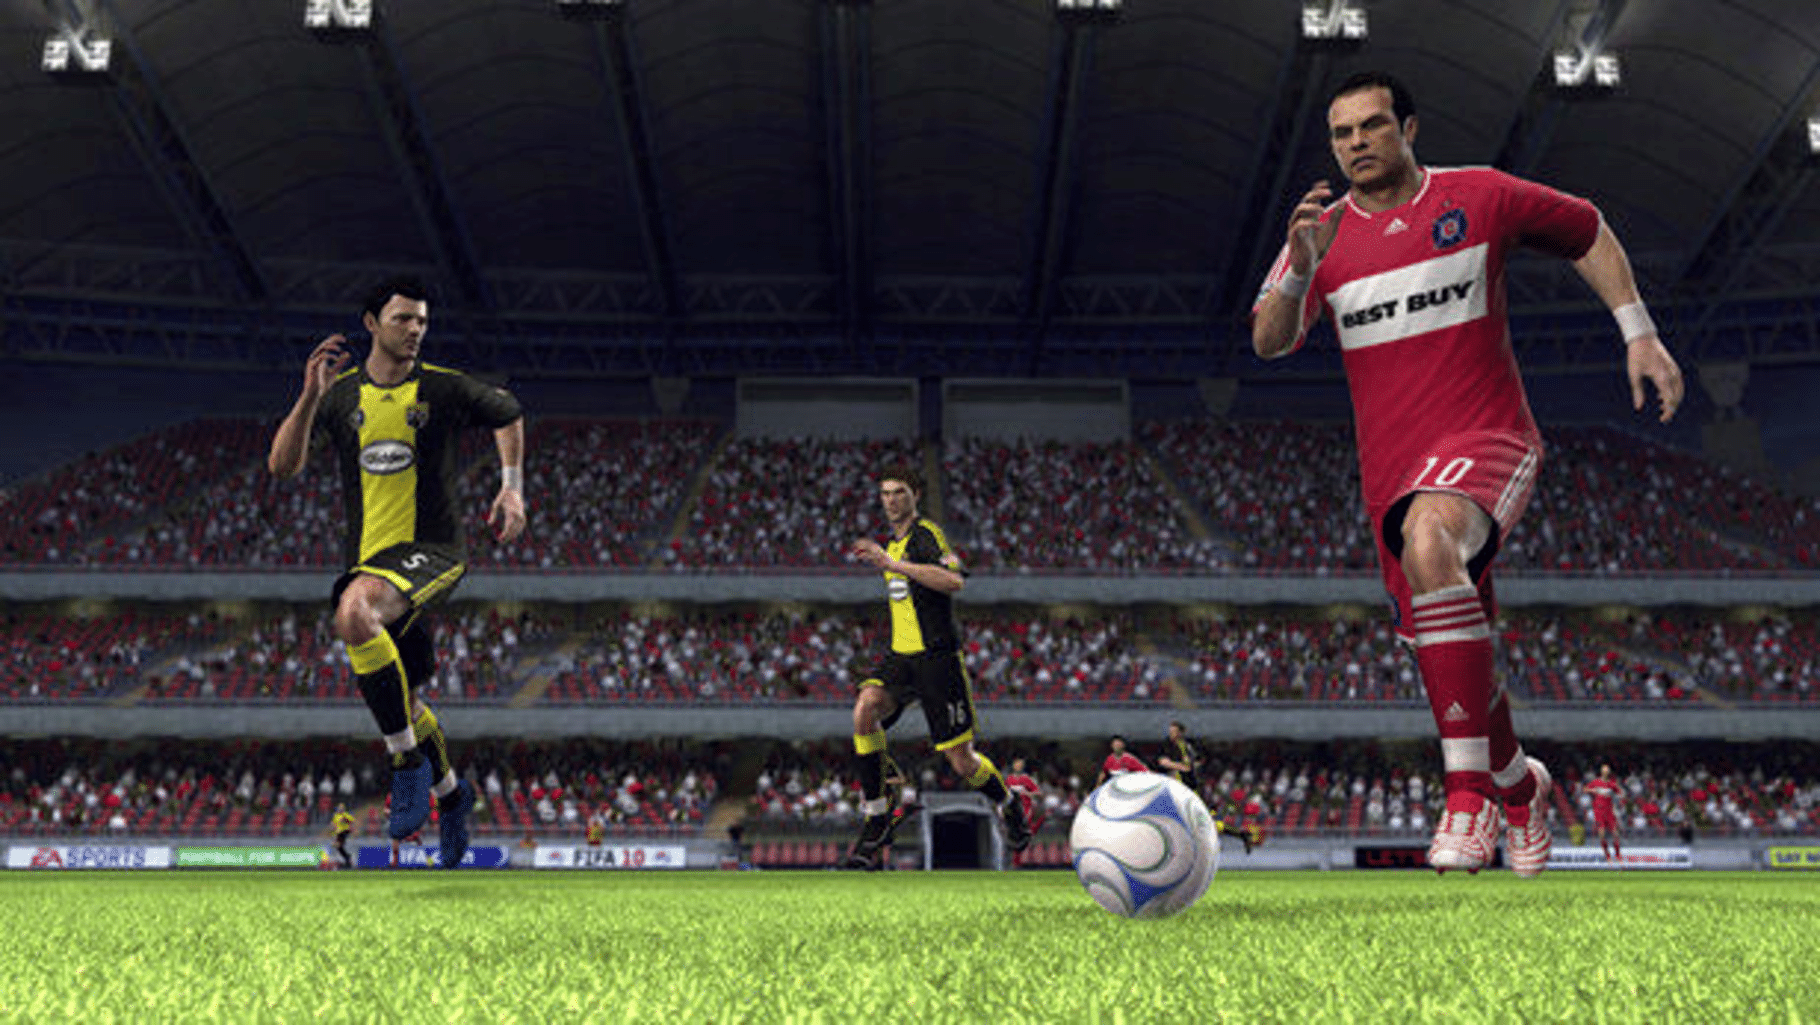 FIFA Soccer 10 screenshot